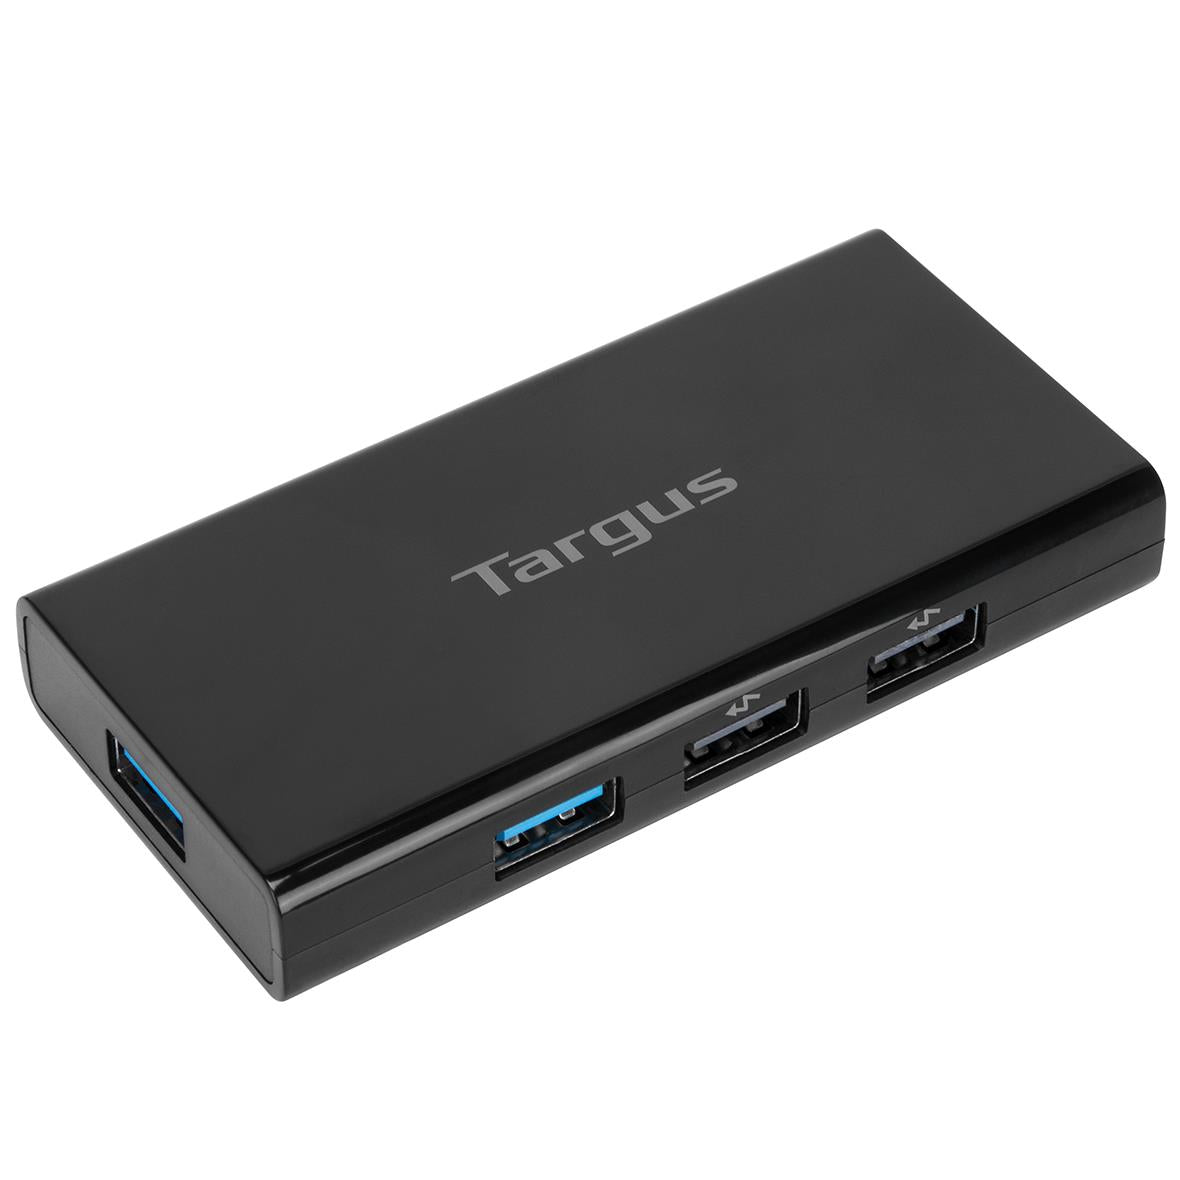 targus 7 port mobile usb 3.0 hub